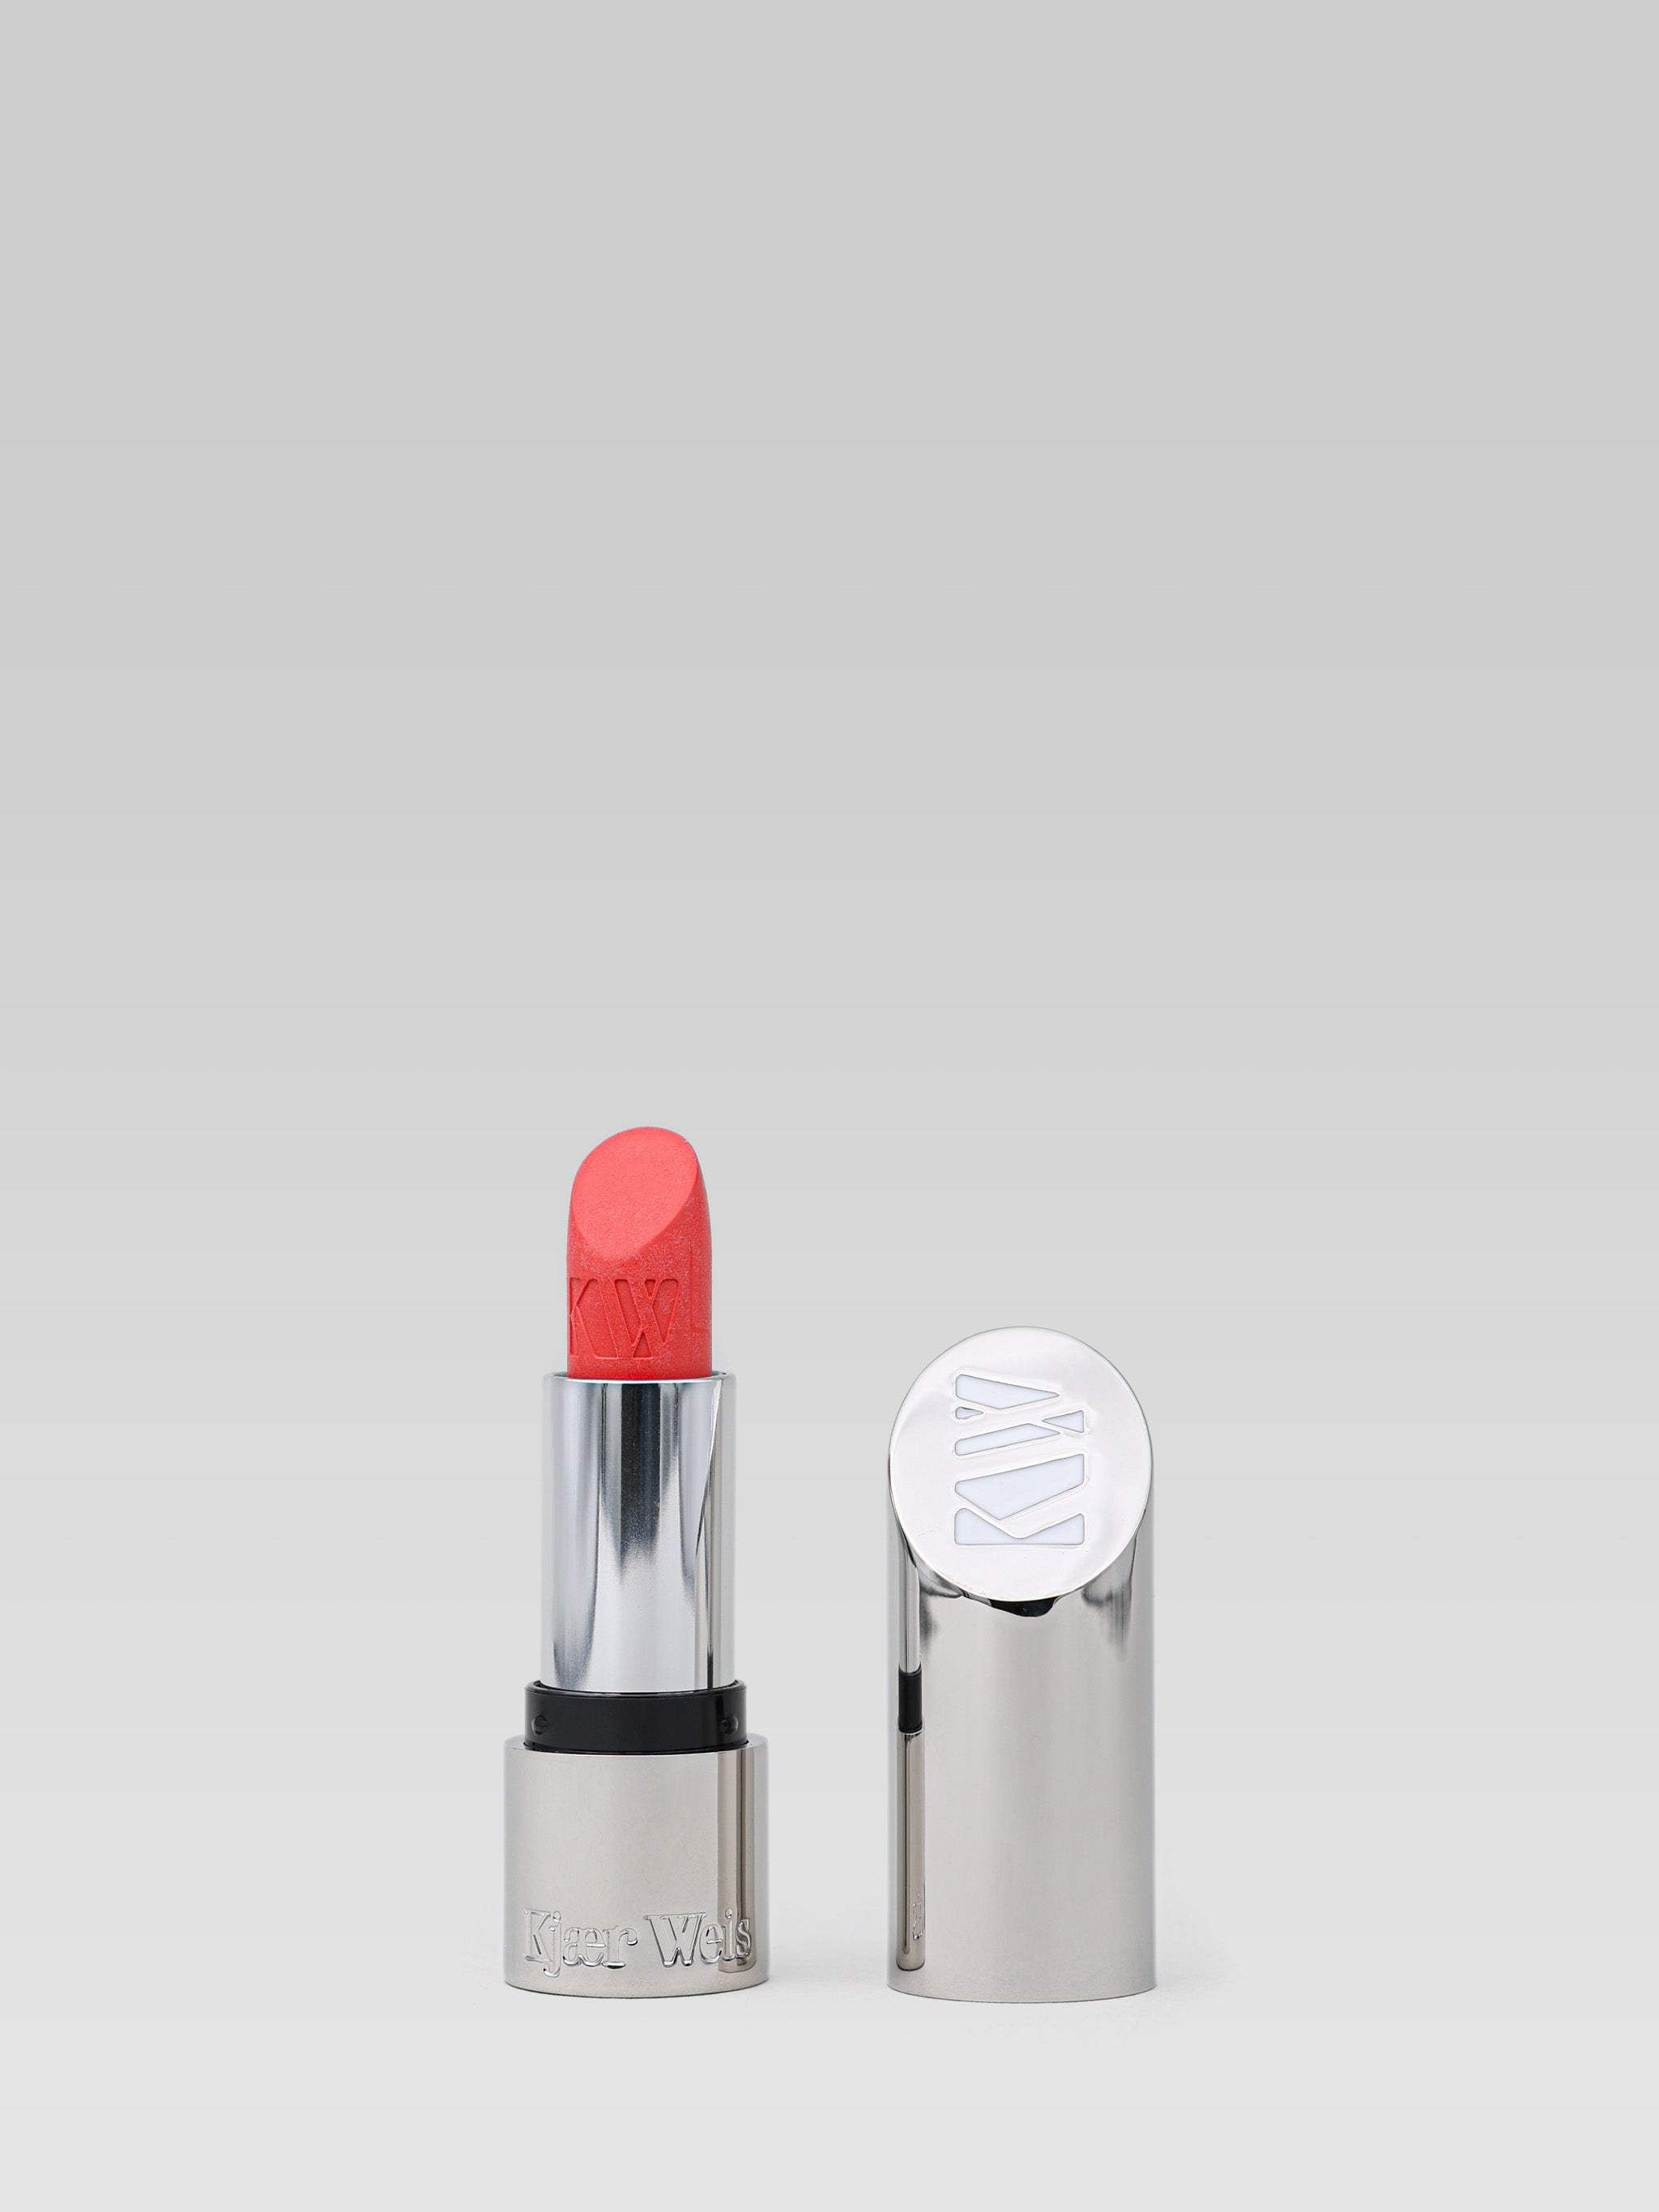 Kjaer Weis Lipstick Love product shot 